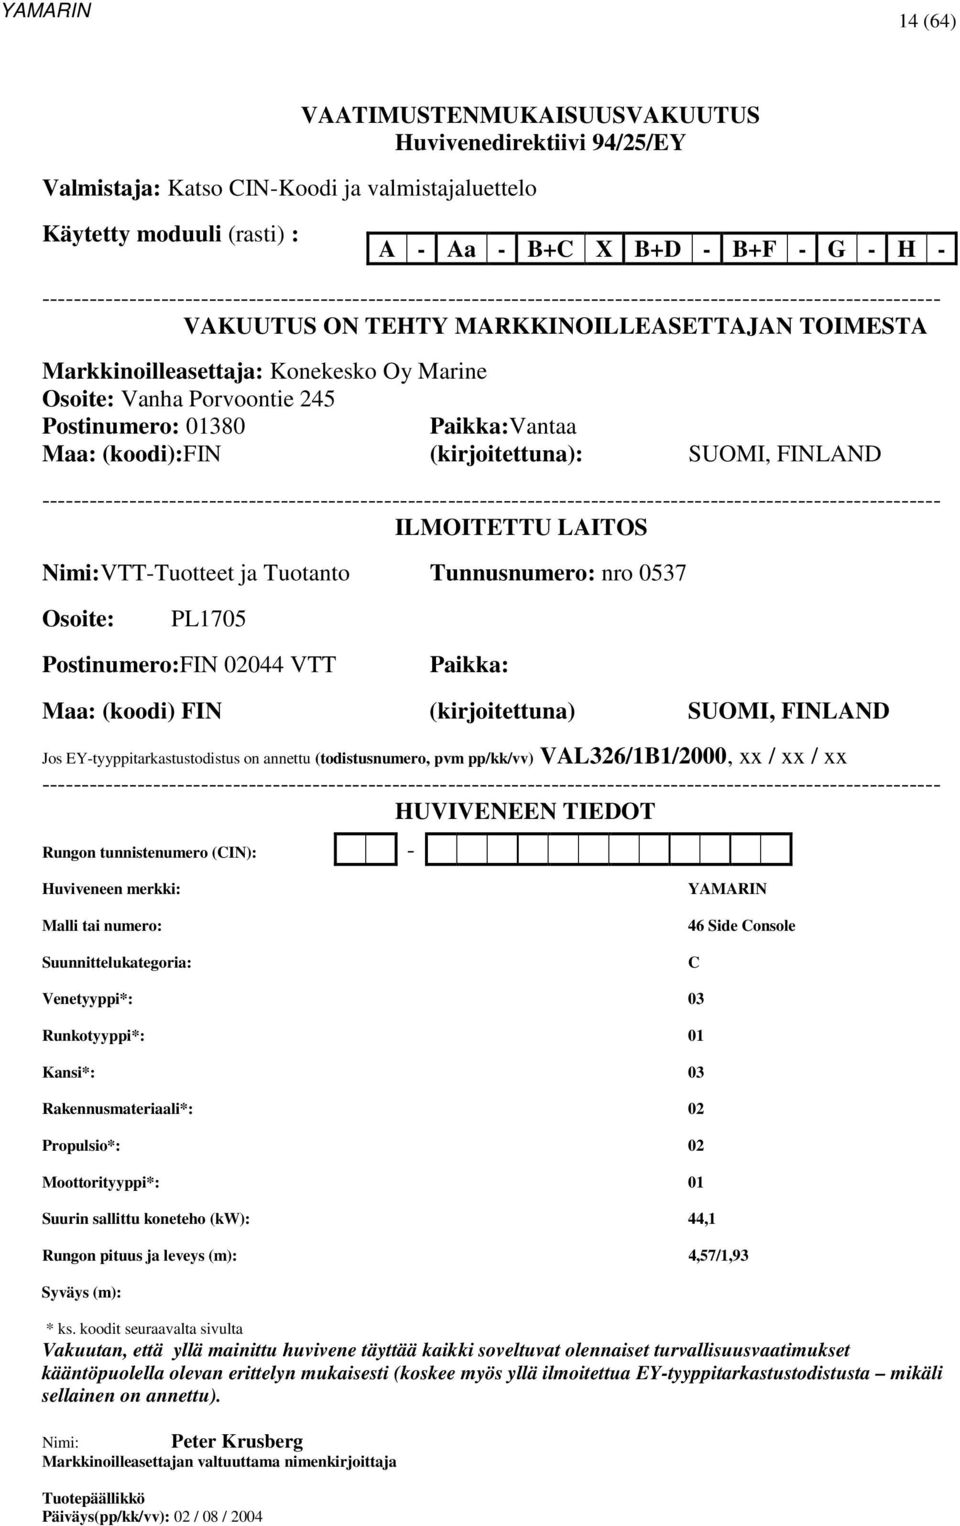 Marine Osoite: Vanha Porvoontie 245 Postinumero: 01380 Paikka:Vantaa Maa: (koodi):fin (kirjoitettuna): SUOMI, FINLAND